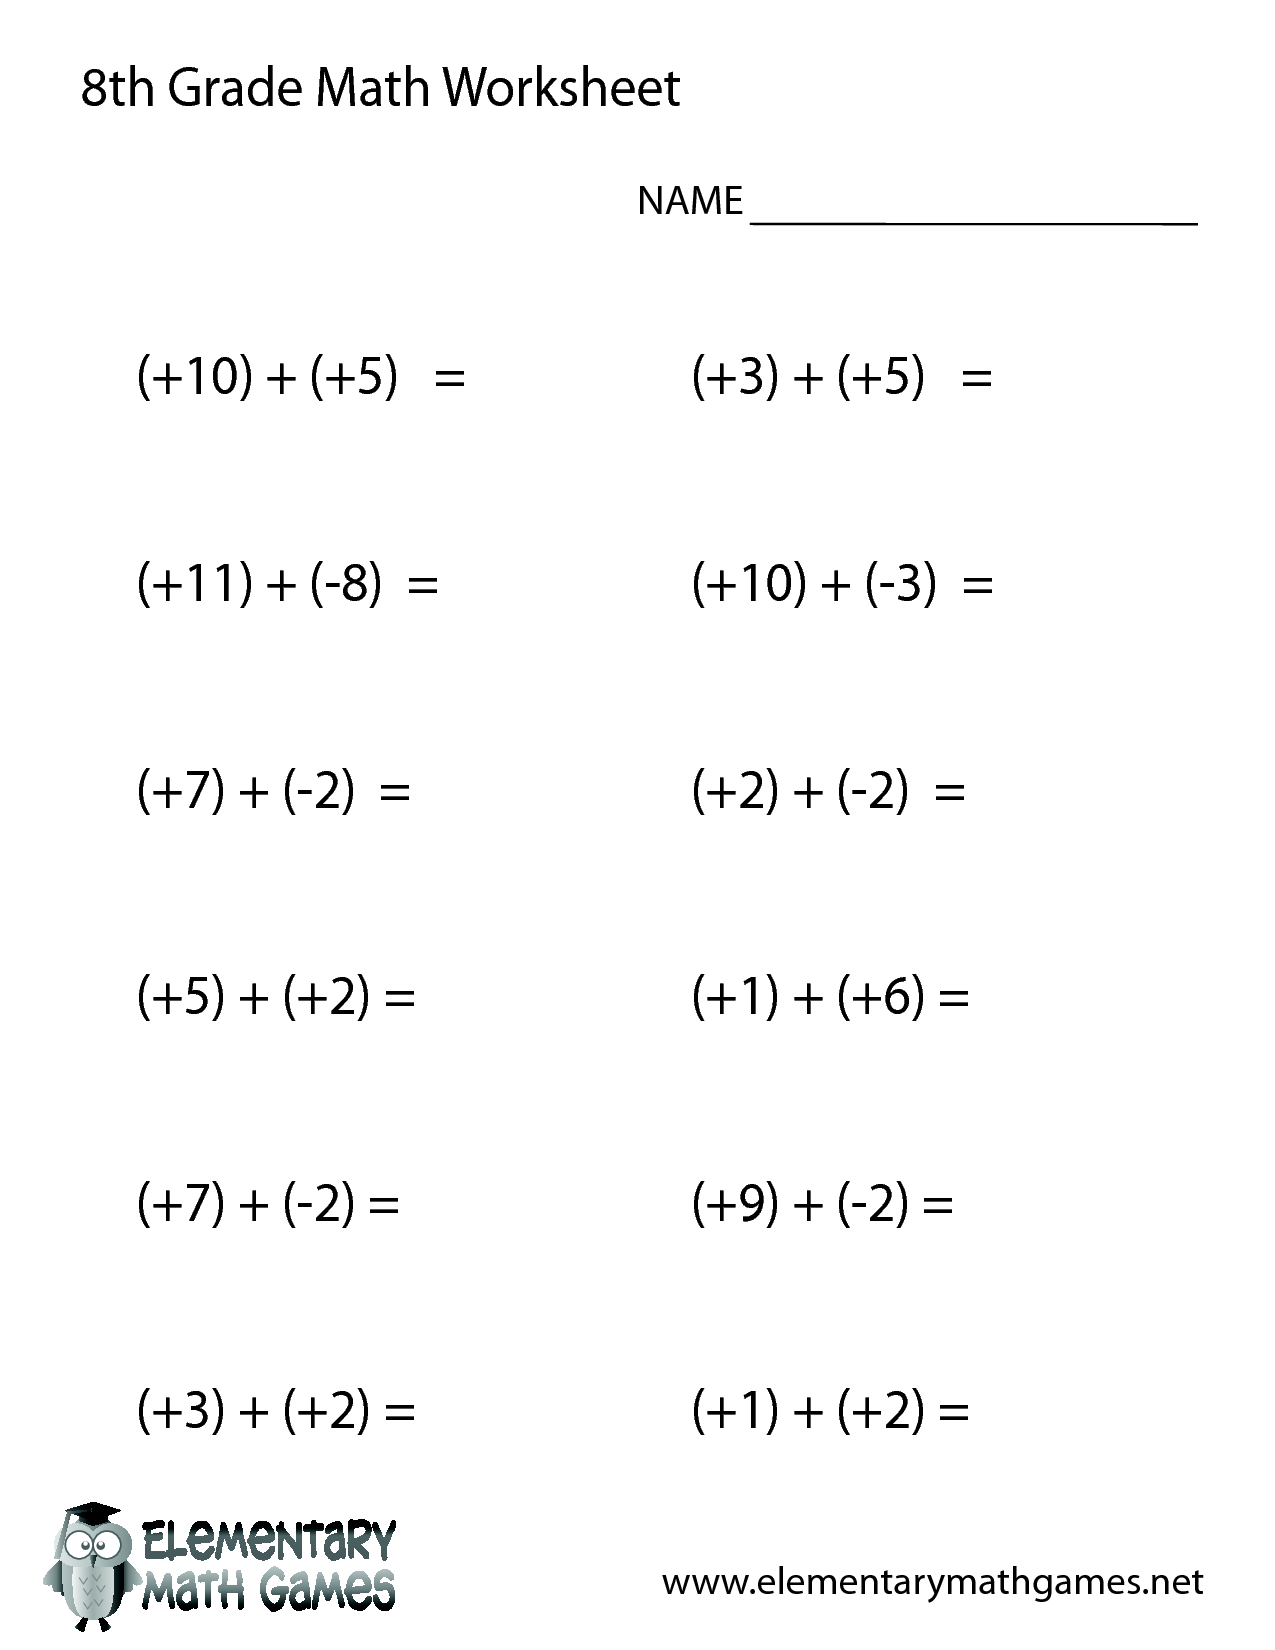 8th Grade Math Worksheets Printable 8th grade math worksheets